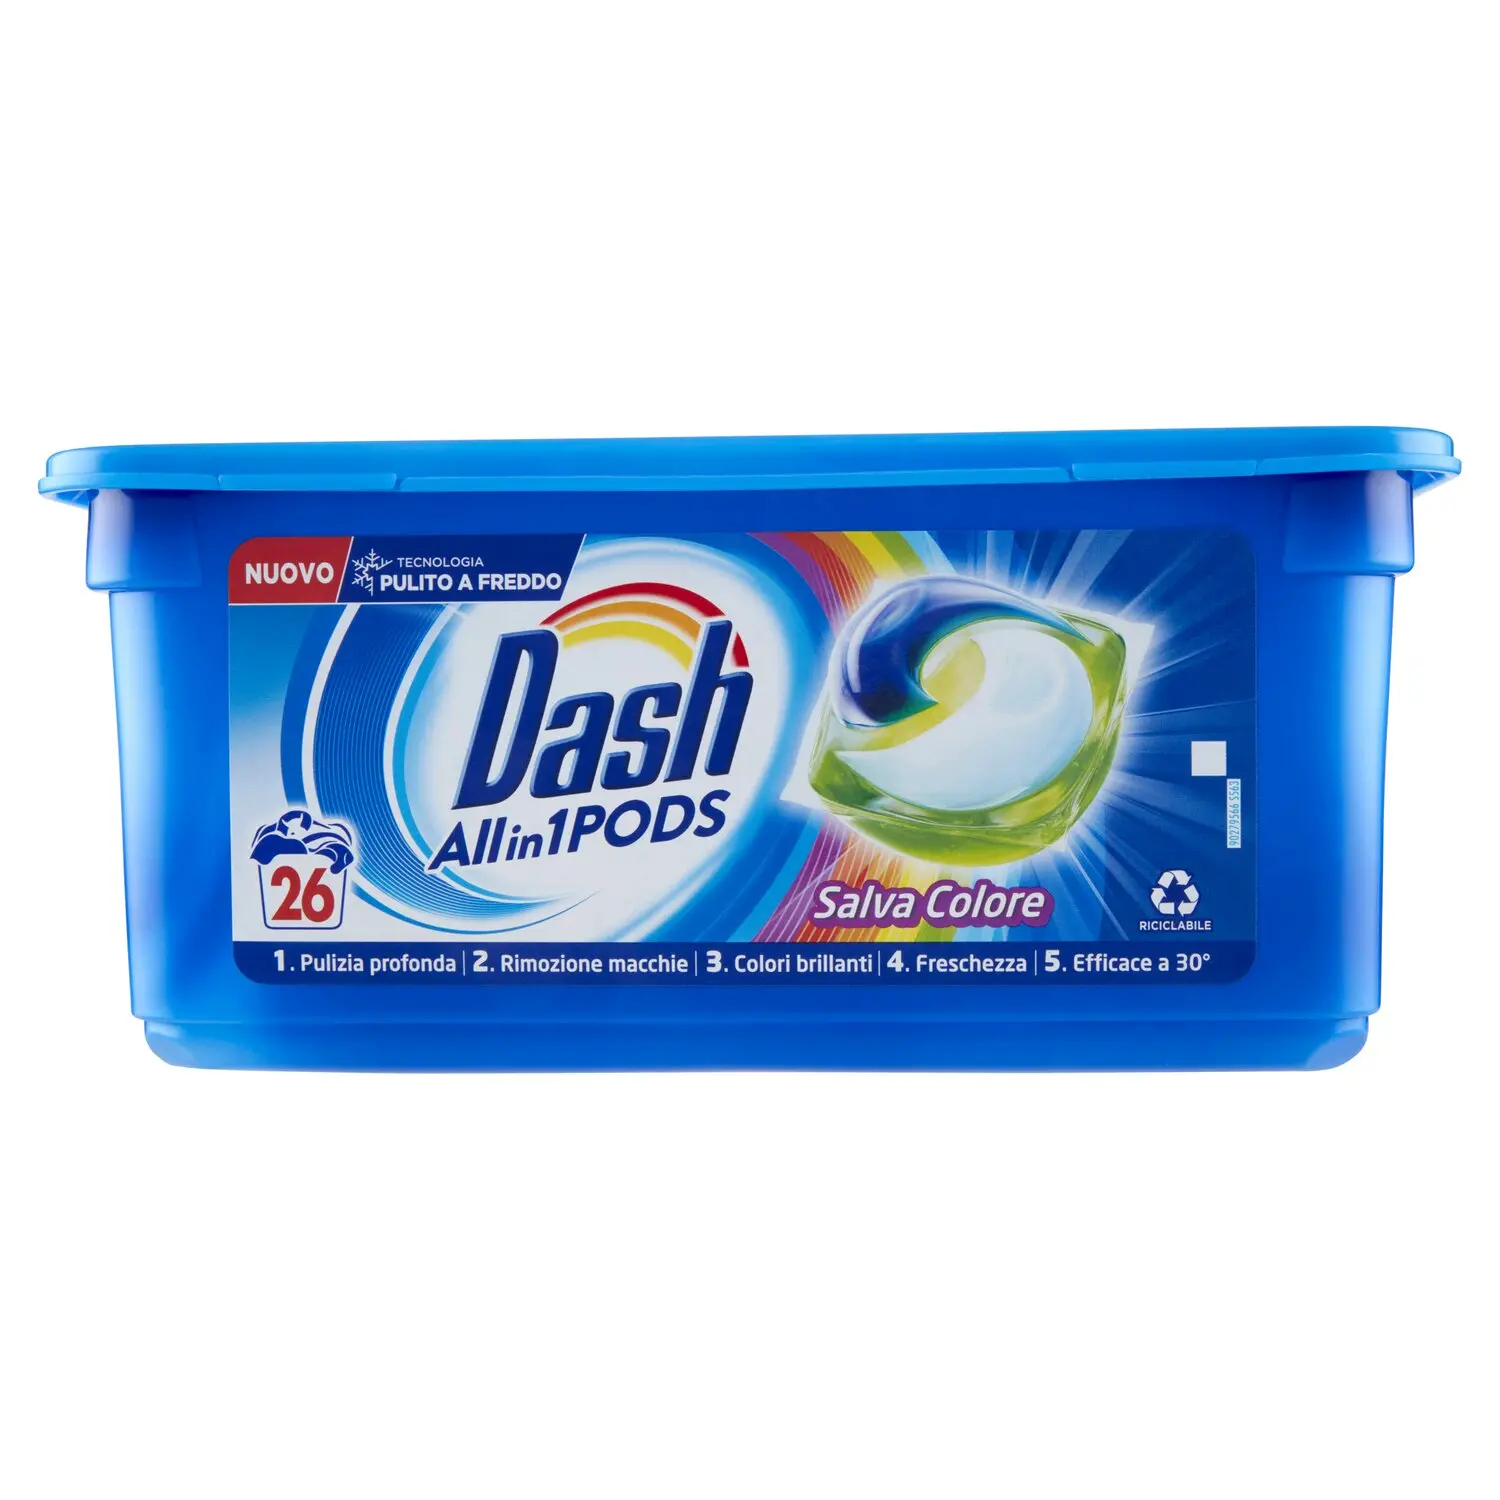 Dash PODS Allin1 Detersivo Lavatrice in Capsule per Bucato Salva